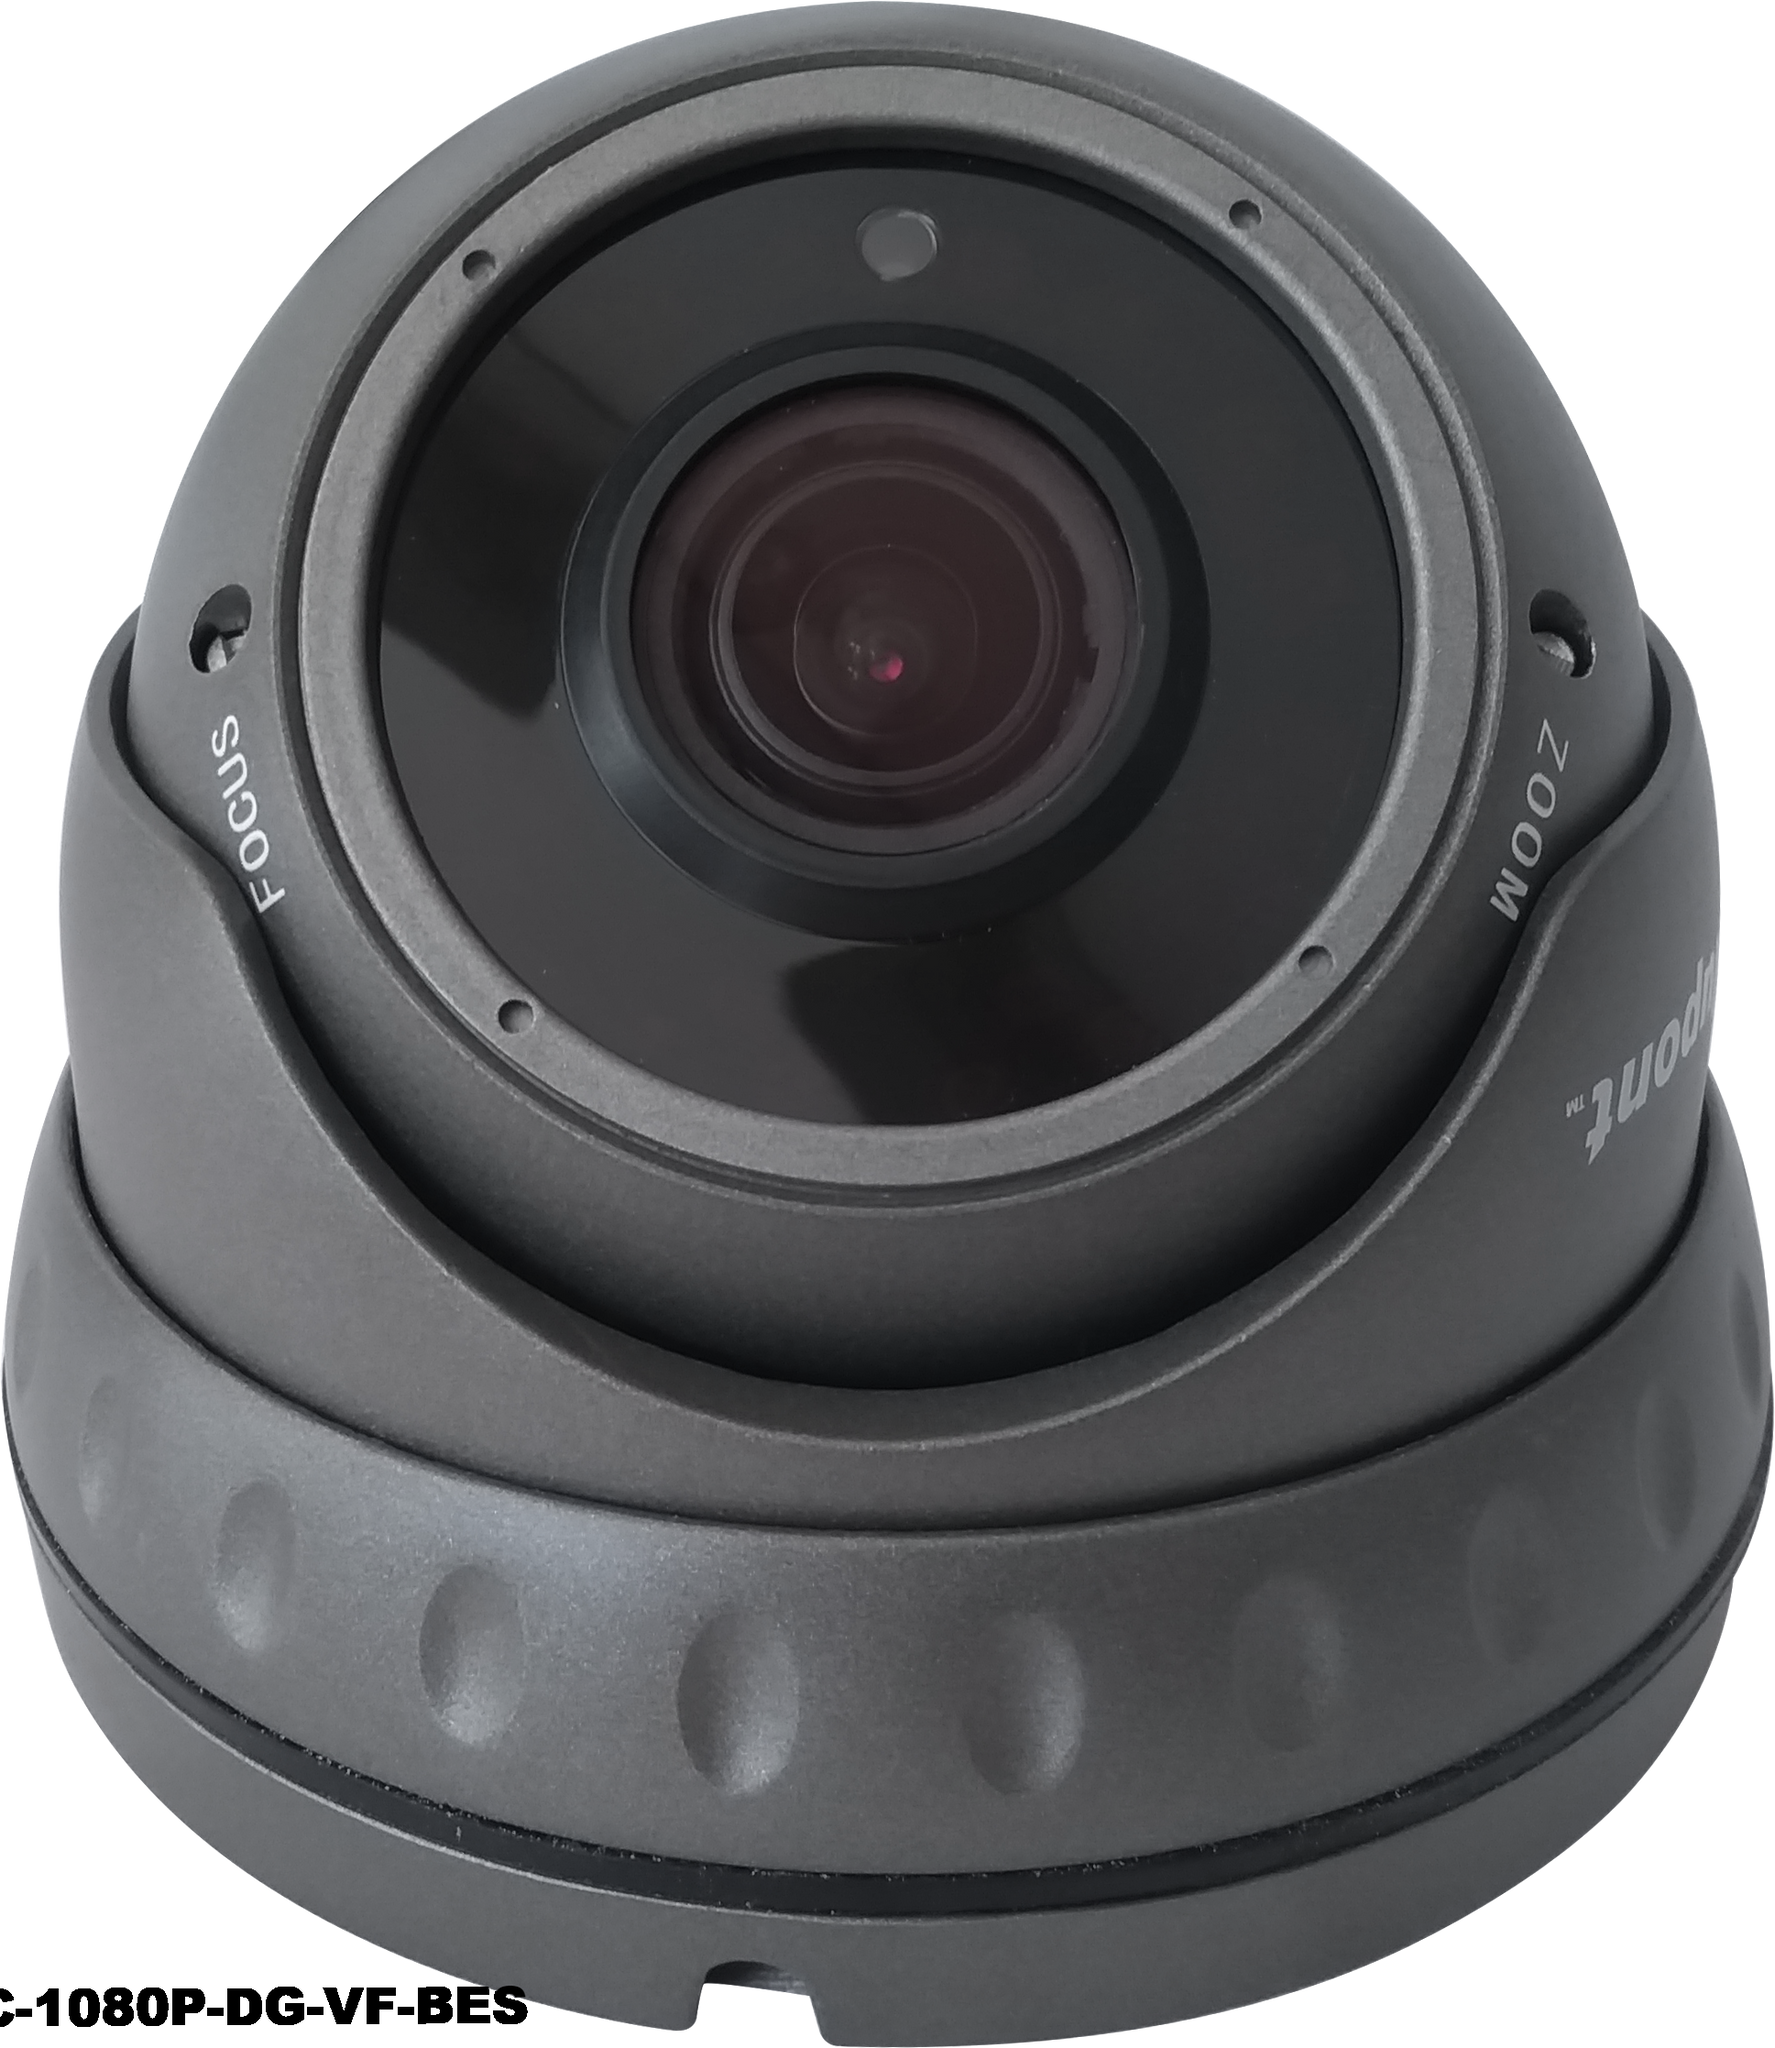 2.0MP 4in1 Grey Dome CCTV Camera